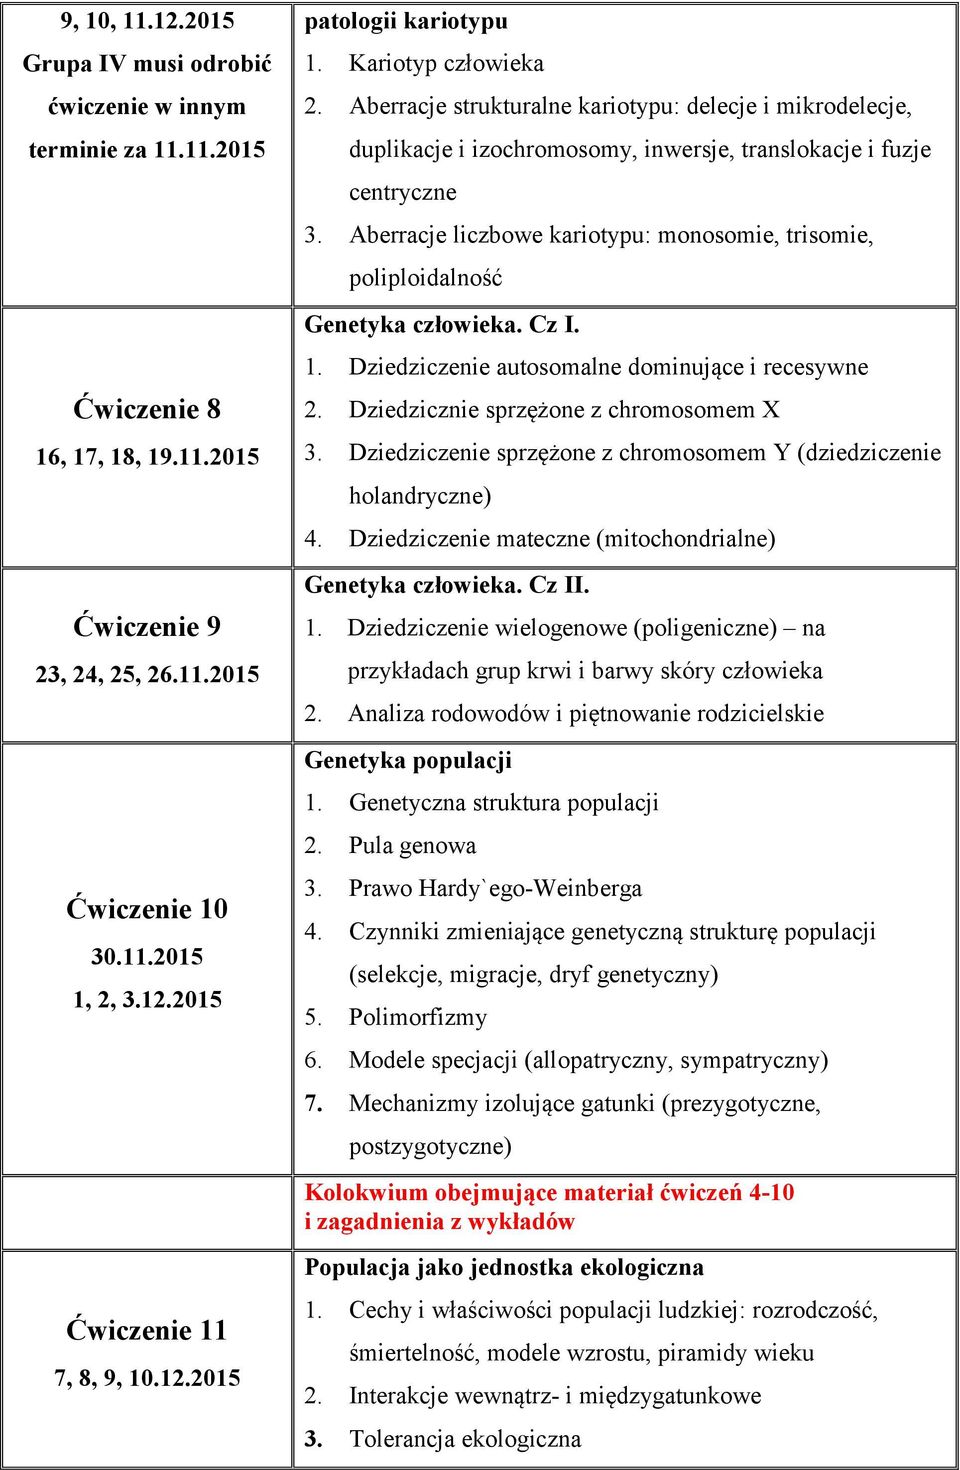 Aberracje liczbowe kariotypu: monosomie, trisomie, poliploidalność Genetyka człowieka. Cz I. 1. Dziedziczenie autosomalne dominujące i recesywne 2. Dziedzicznie sprzężone z chromosomem X 3.